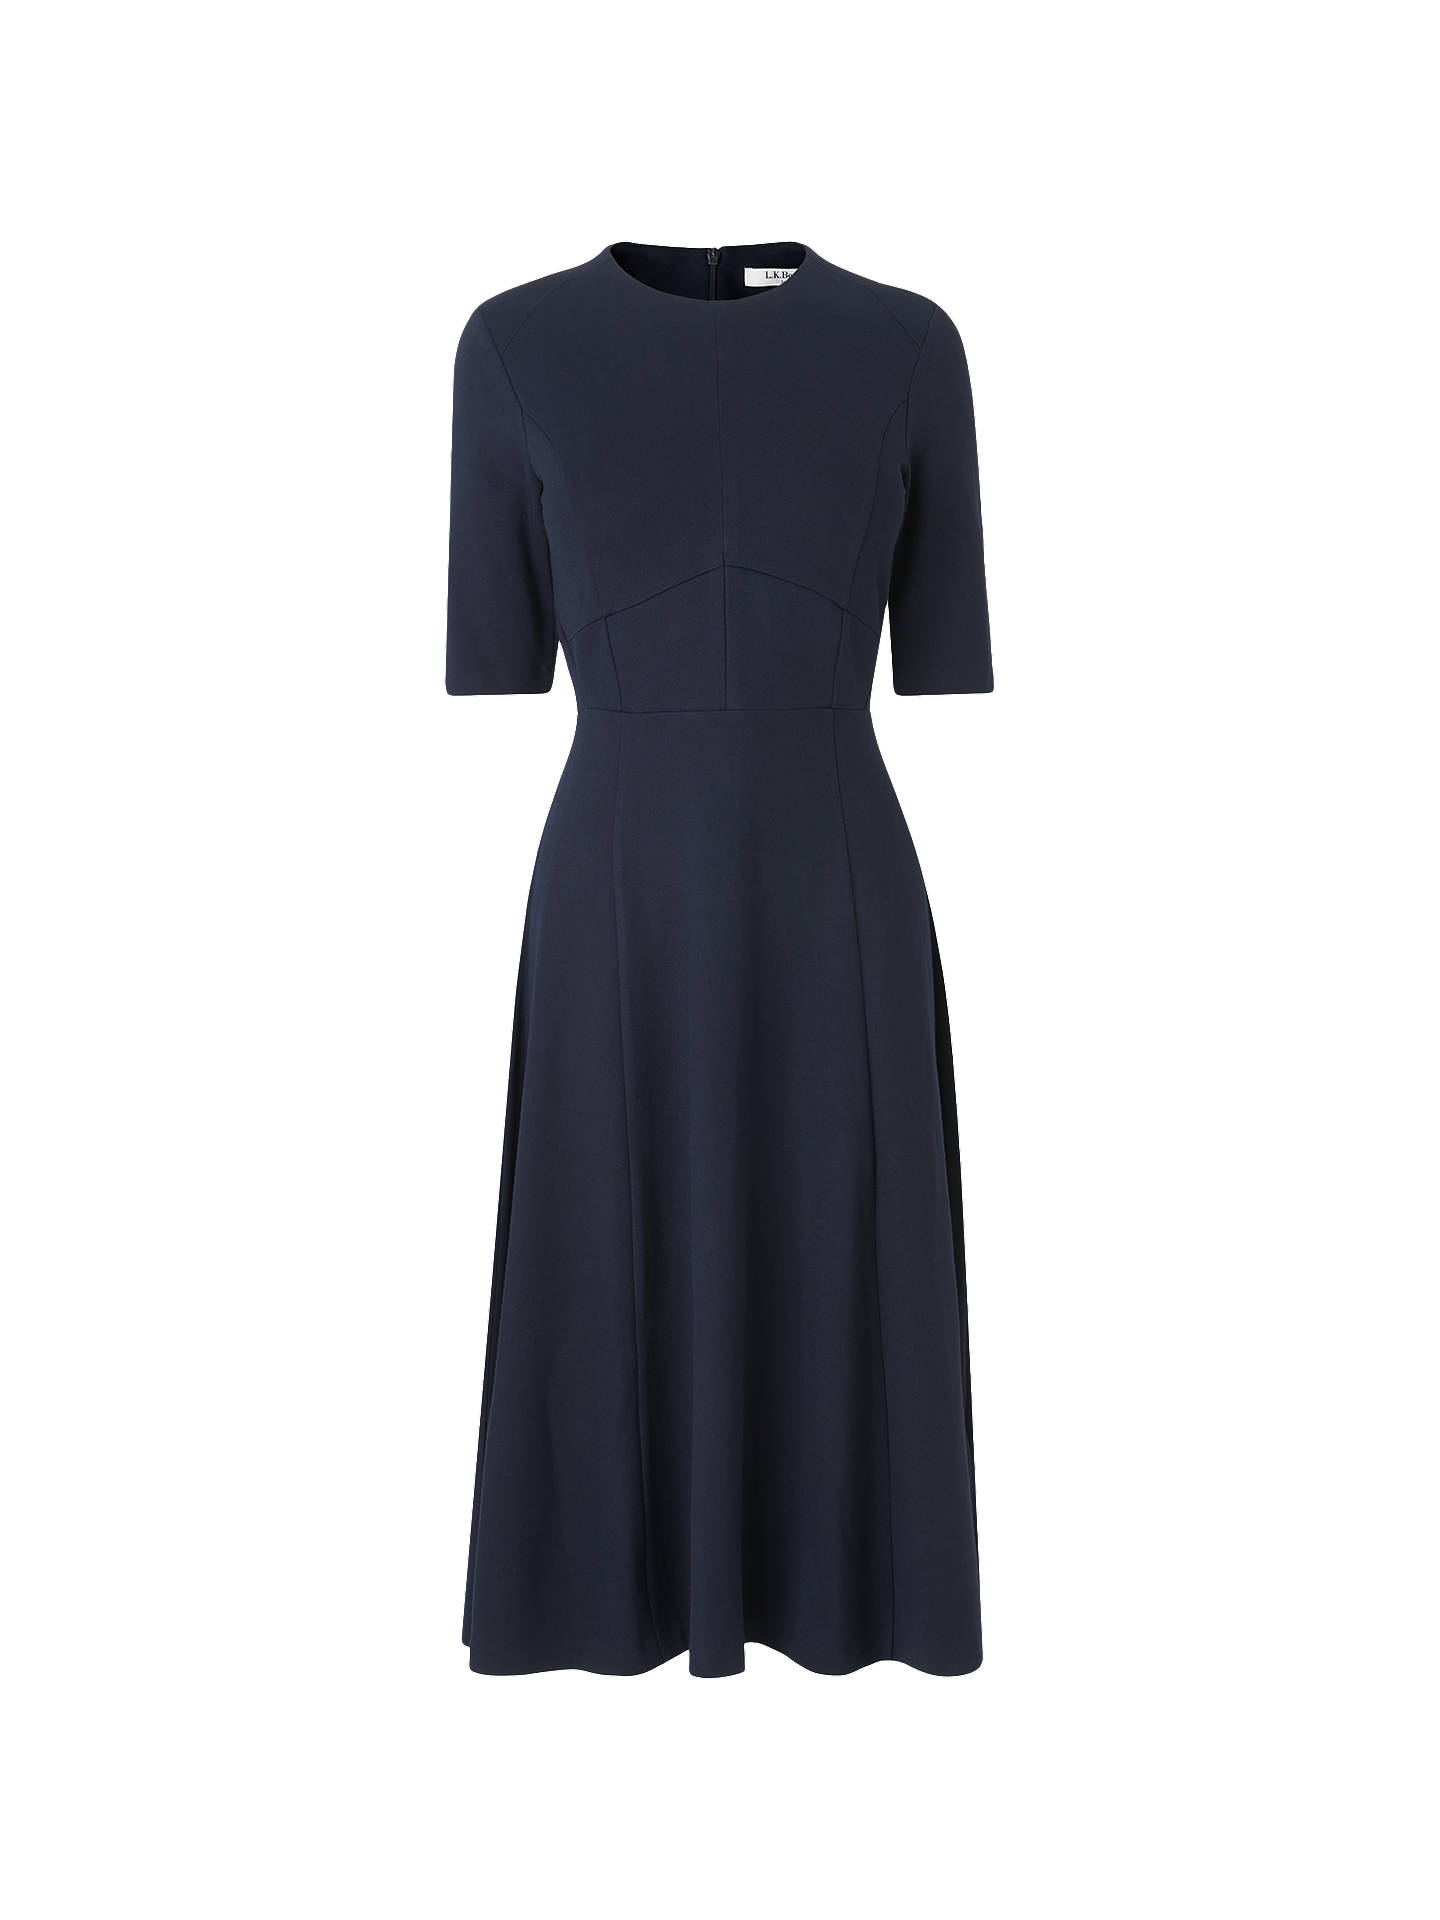 L.K.Bennett Beth Seam Detail Dress, Sloane Blue at John Lewis & Partners